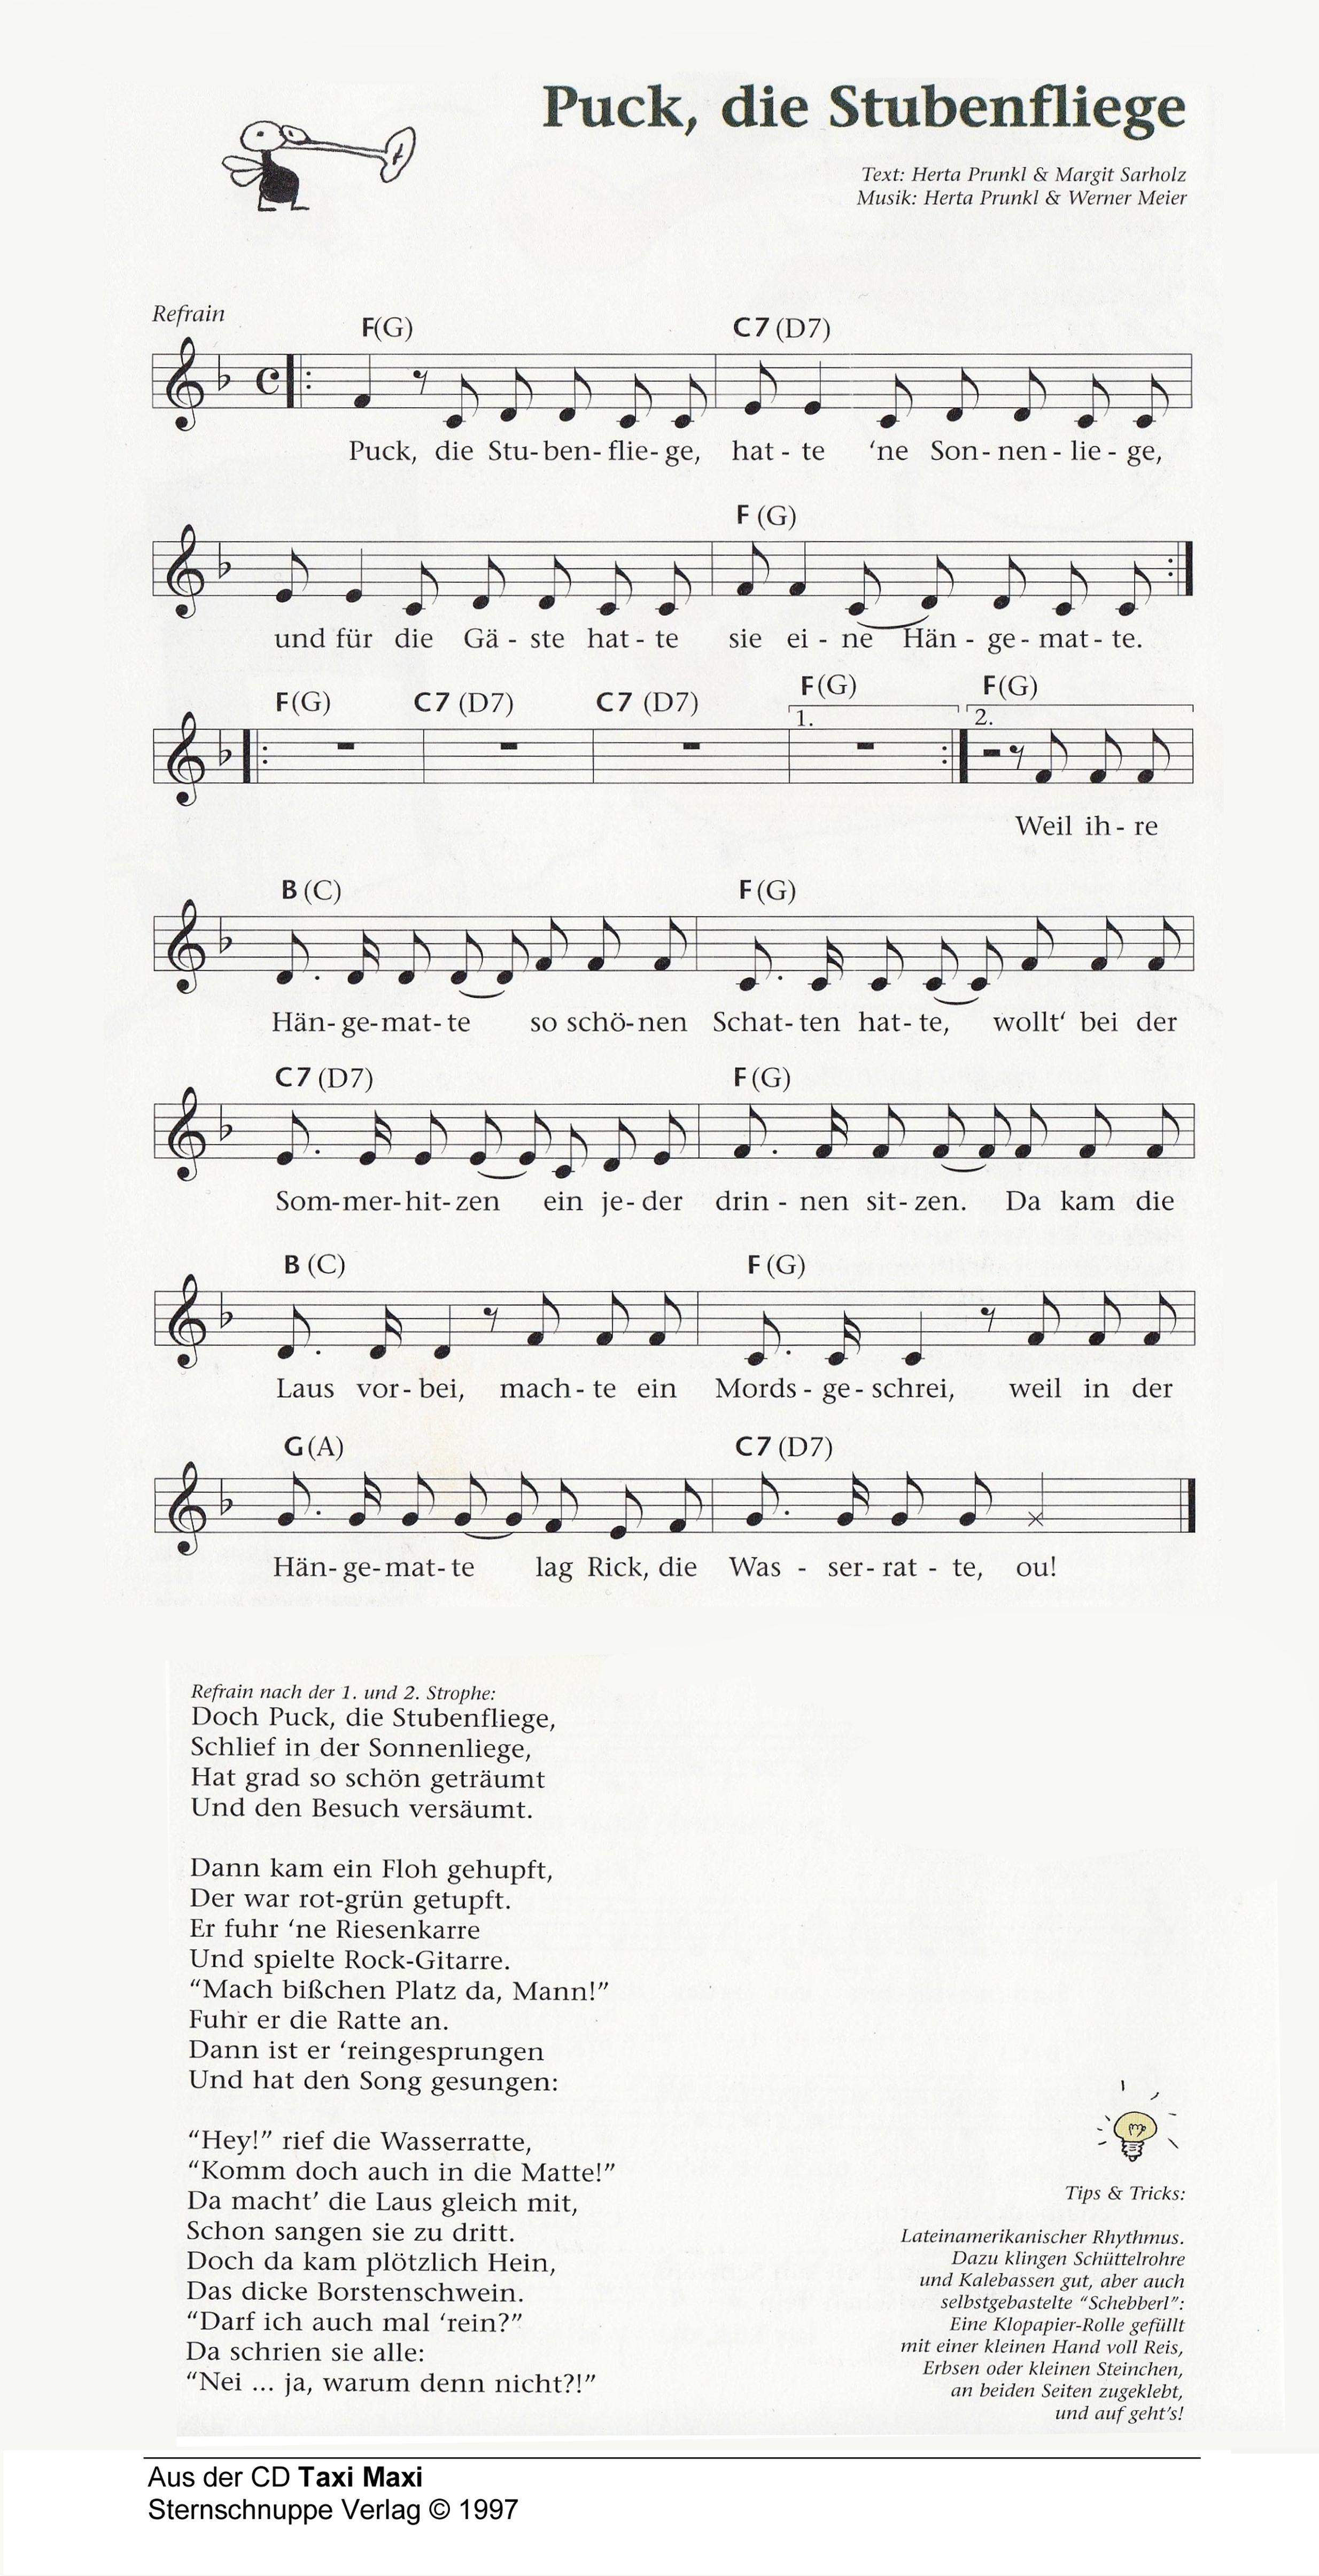 Liedtext, Akkorde und Noten vom Kinderlied Puck, die Stubenfliege (Remix fürs Kinder-Tanz-Fest)